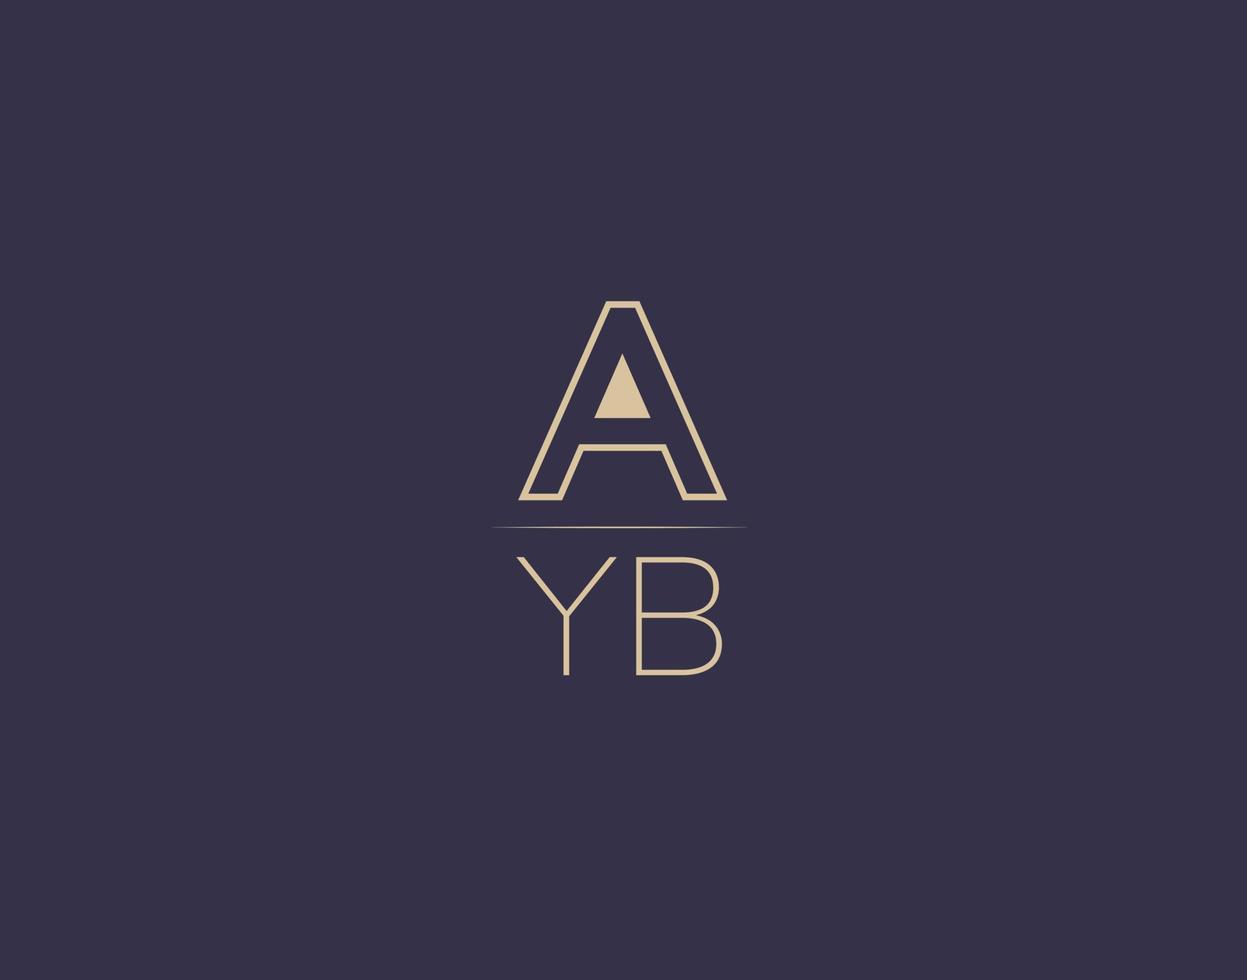 ayb brief logo ontwerp modern minimalistische vector afbeeldingen